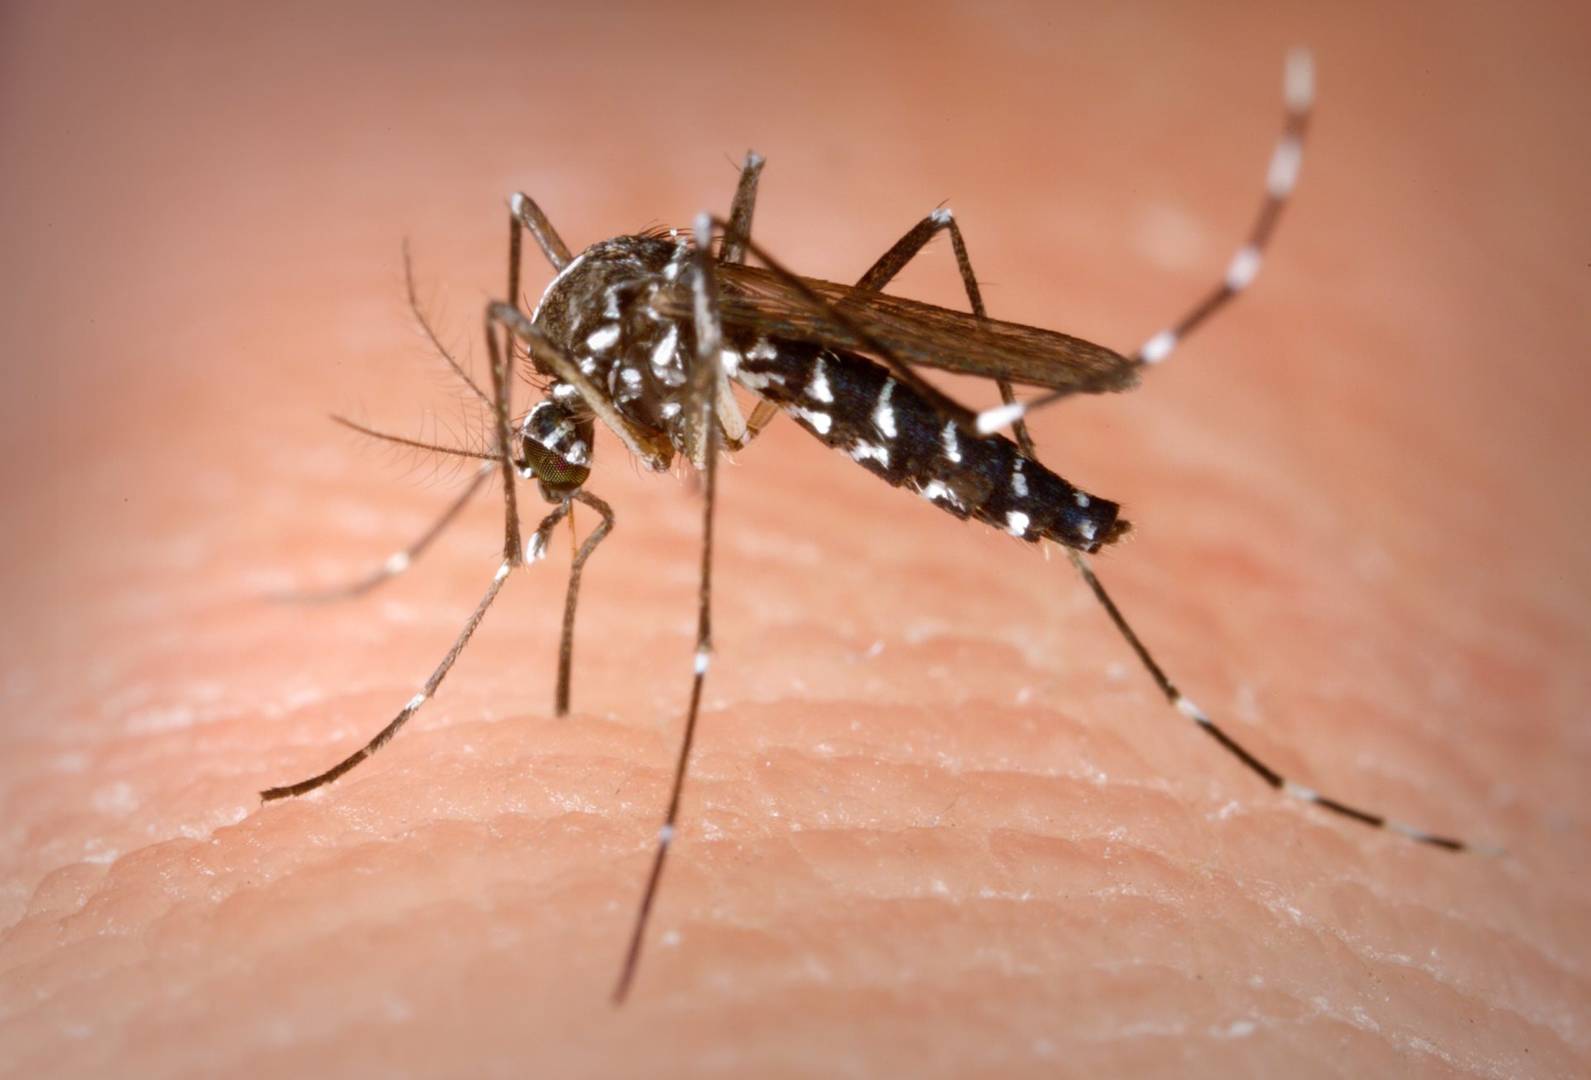 https://vanguardia.com.mx/articulo/descubren-como-hacernos-invisibles-los-mosquitos